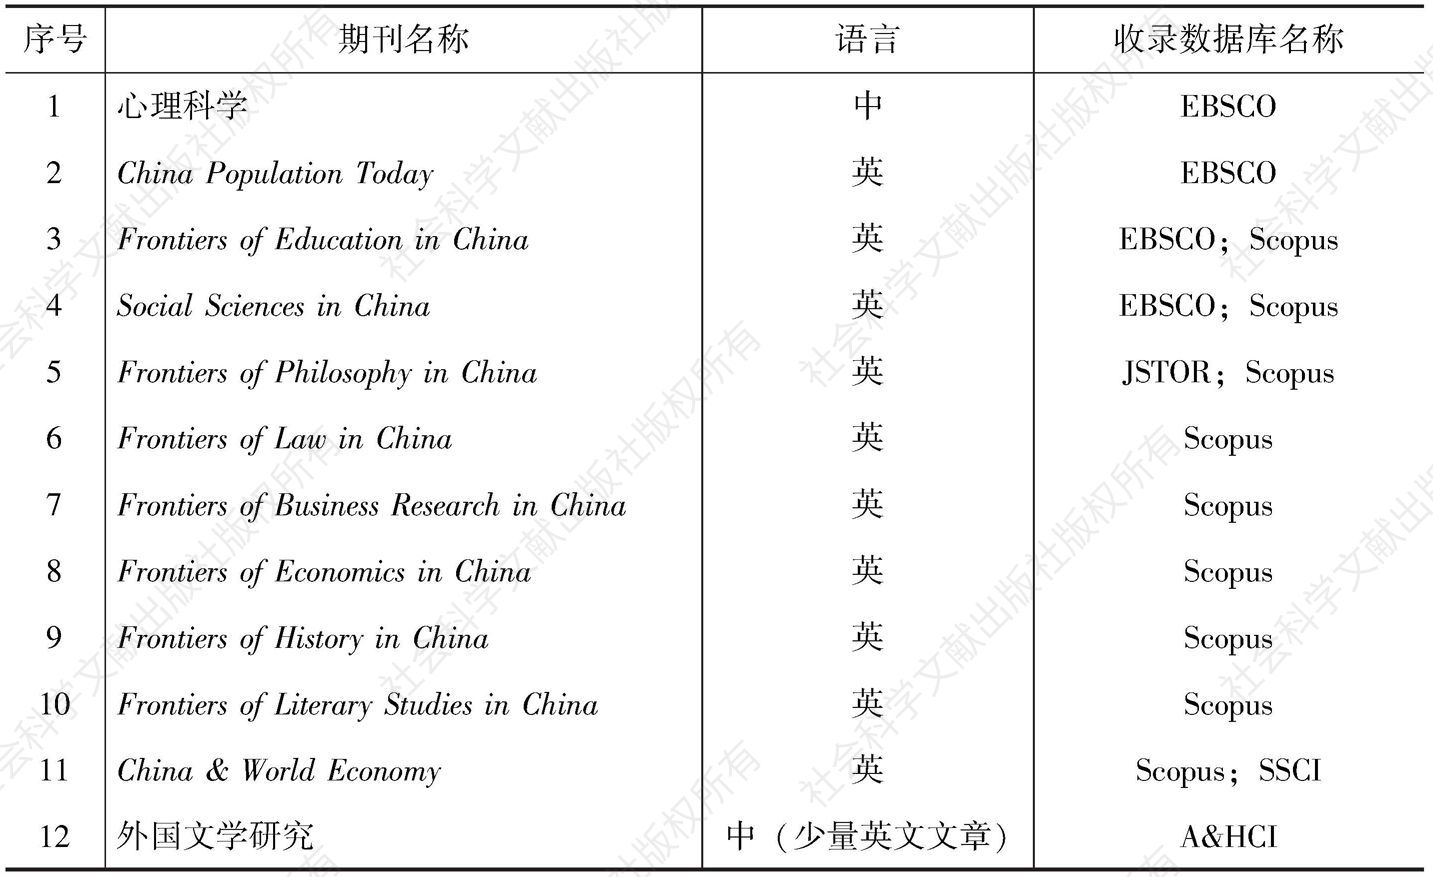 表2-3 中国社科学术期刊被国际知名数据库收录情况